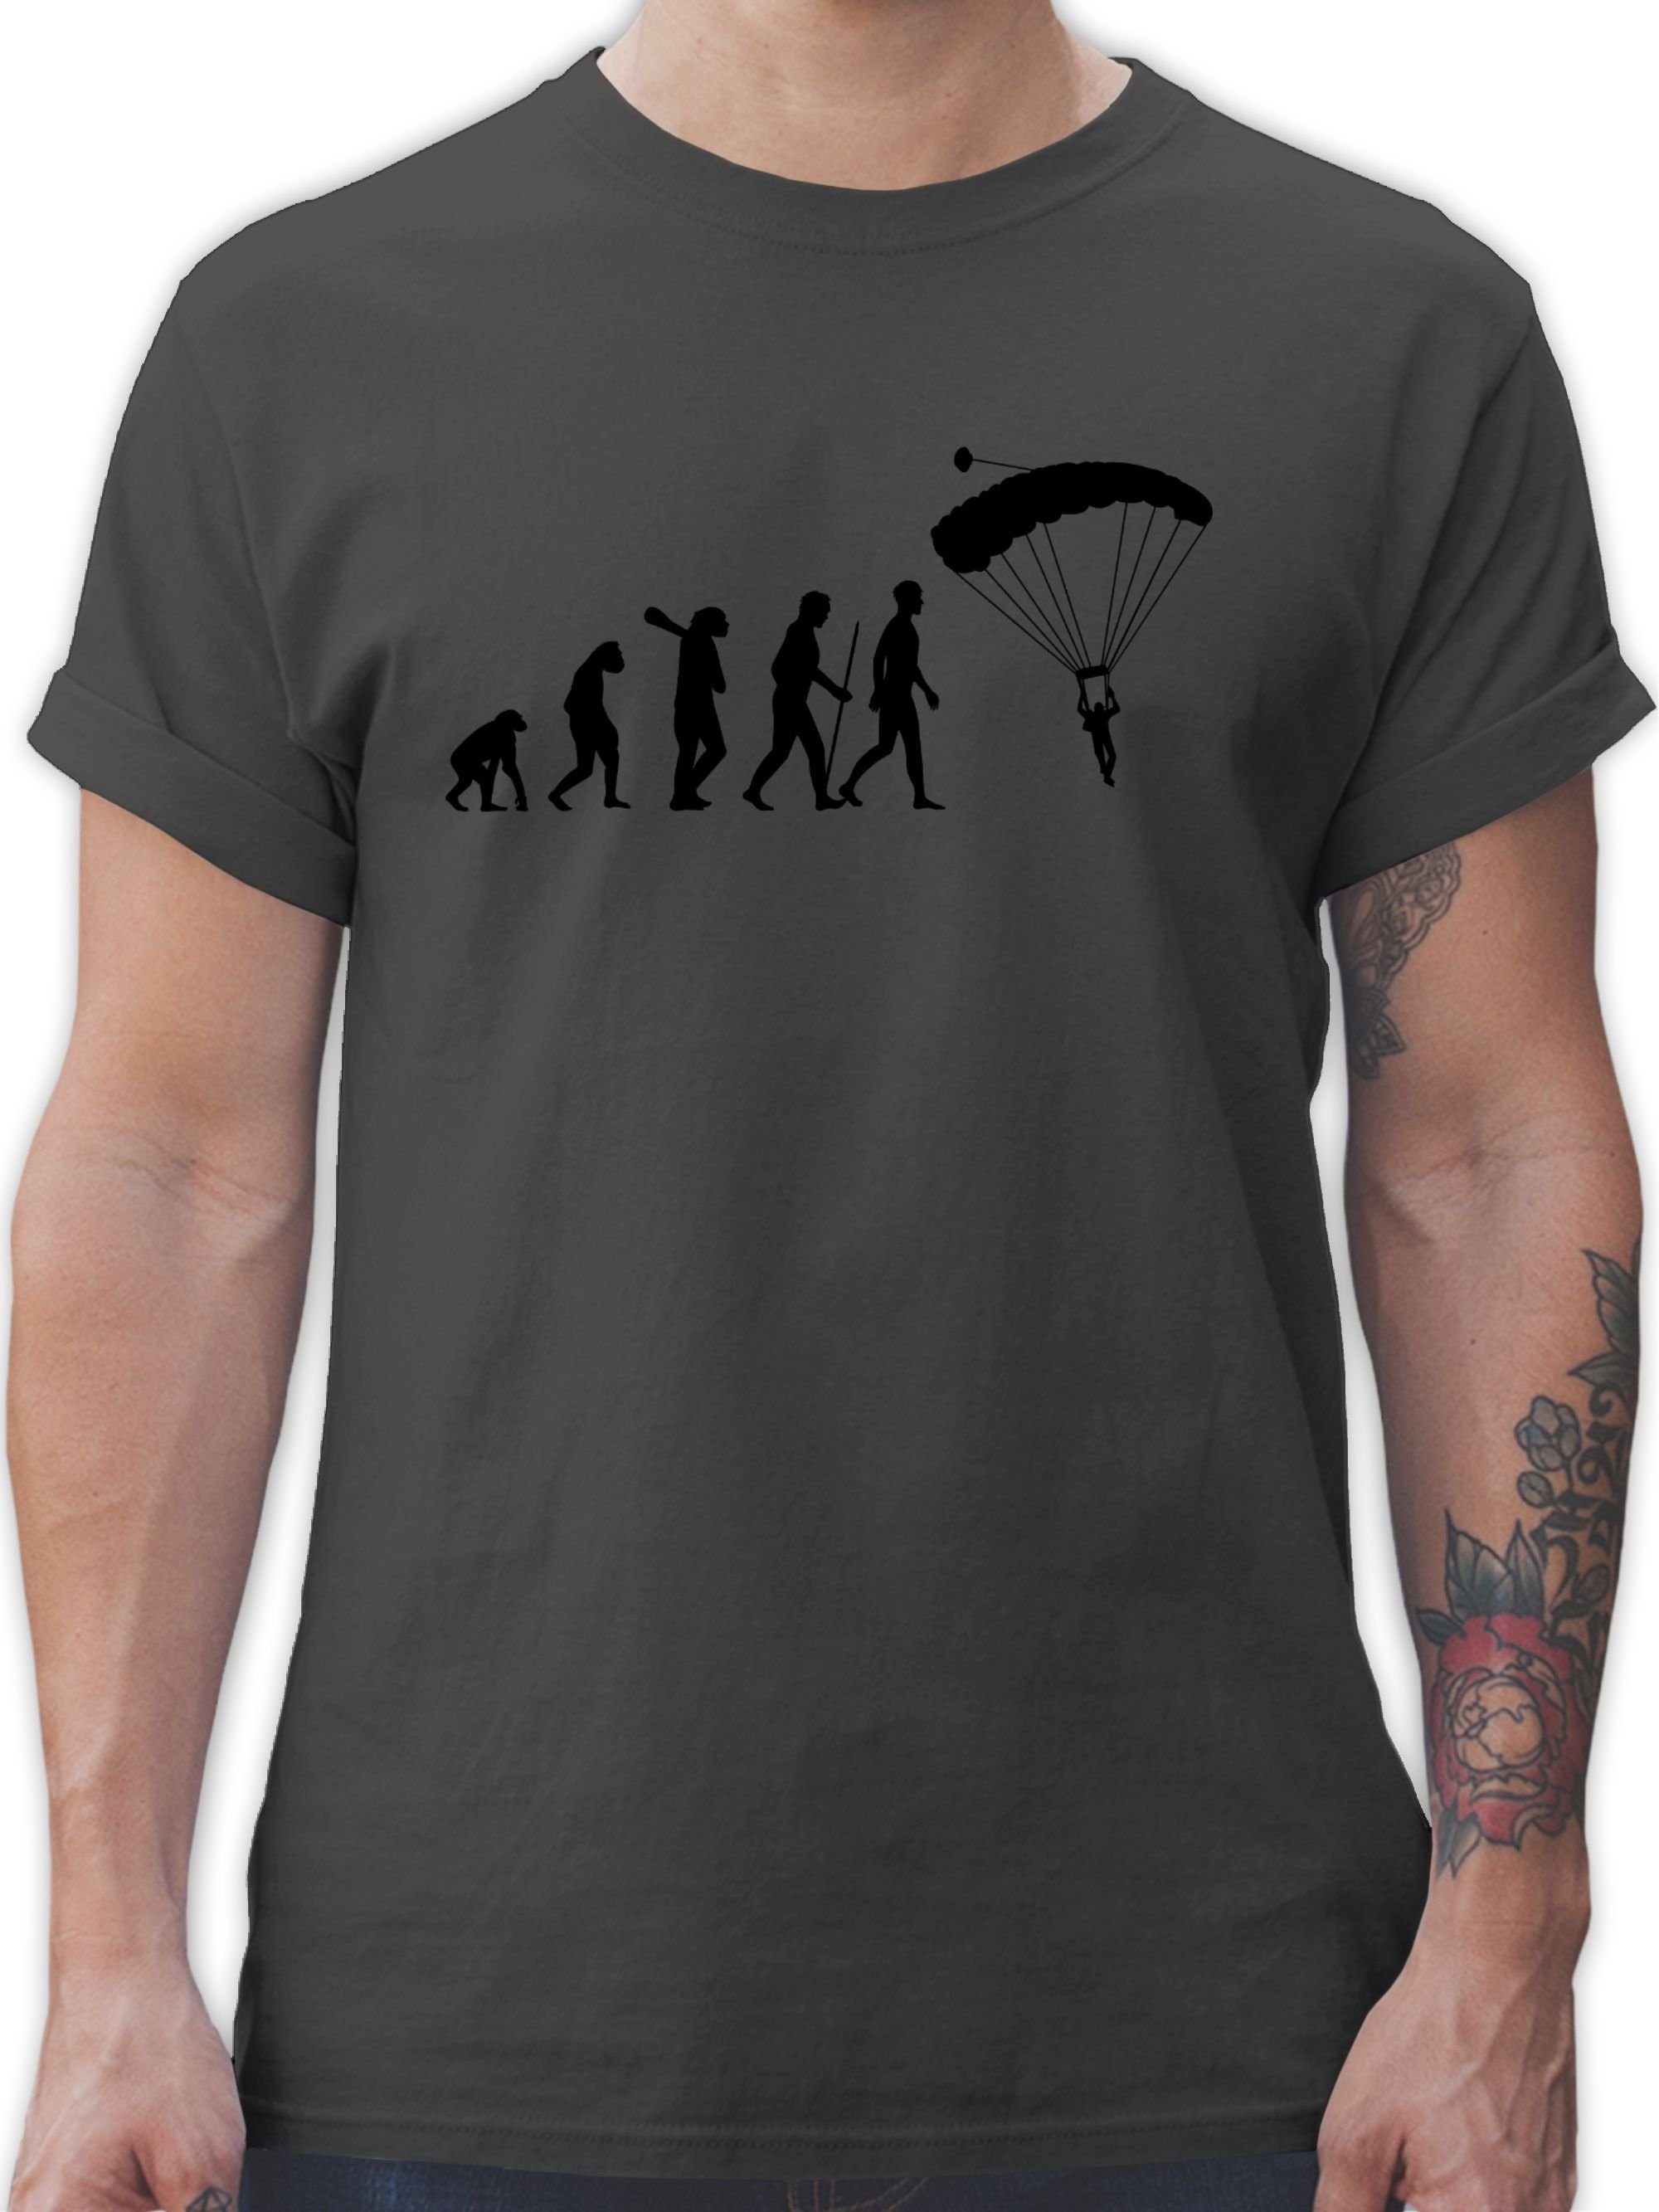 Shirtracer T-Shirt Fallschirmspringen Evolution - Evolution Outfit - Herren Premium T-Shirt fallschirmsprung tshirt evolution - fallschirm - gleitschirm 1 Dunkelgrau